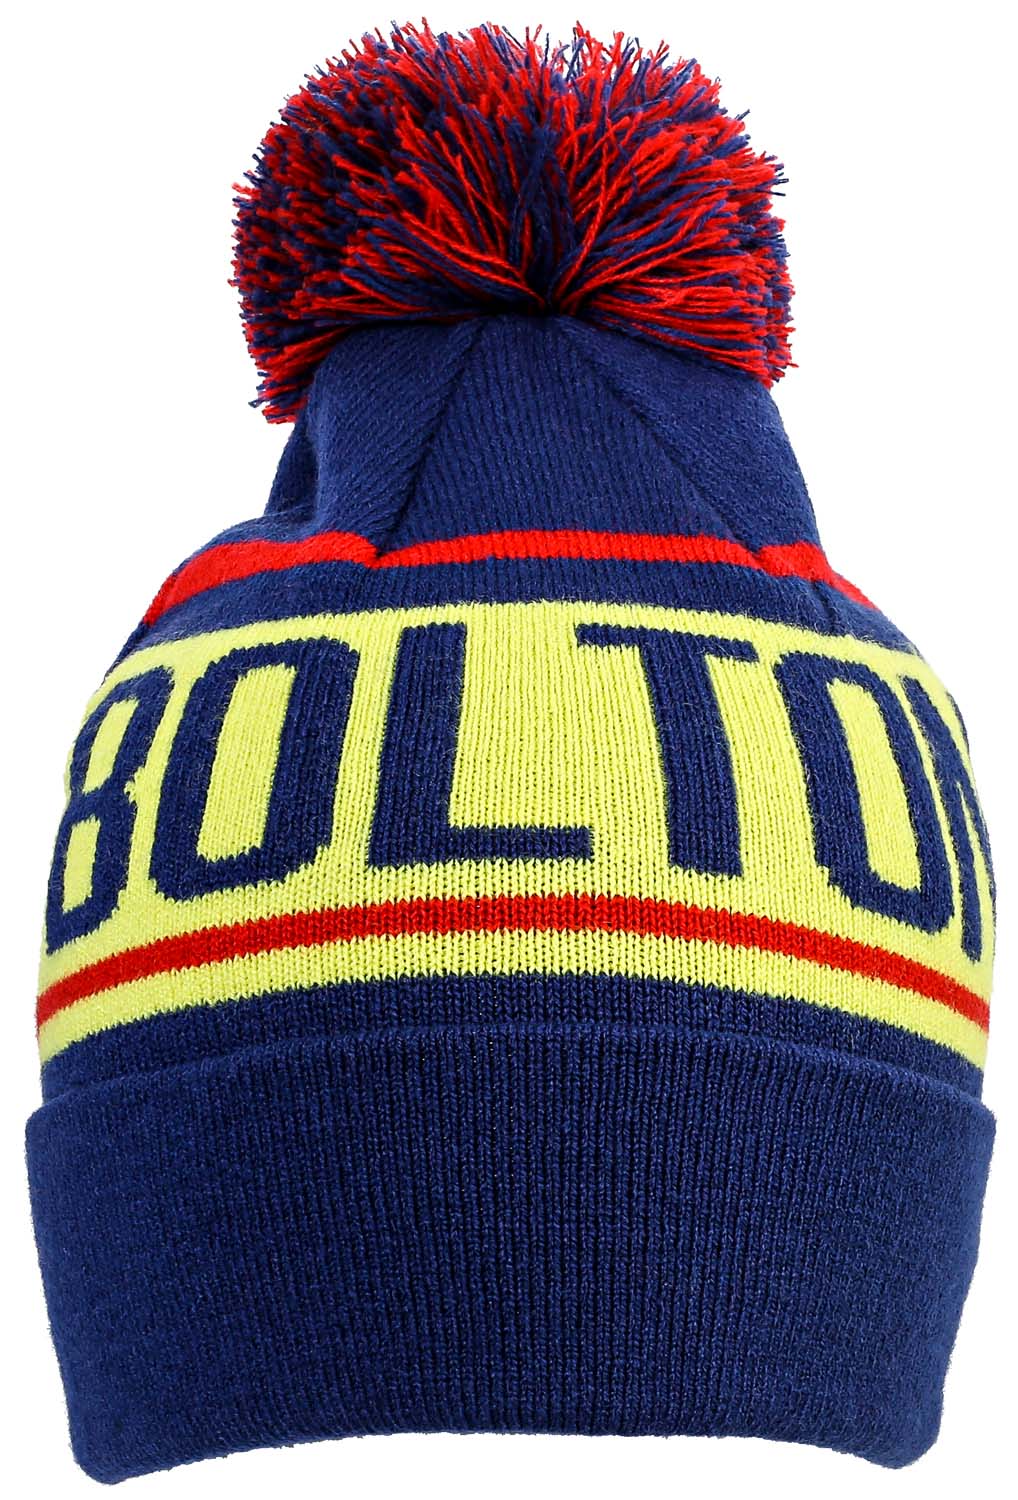 Mütze - Colorful Bolton